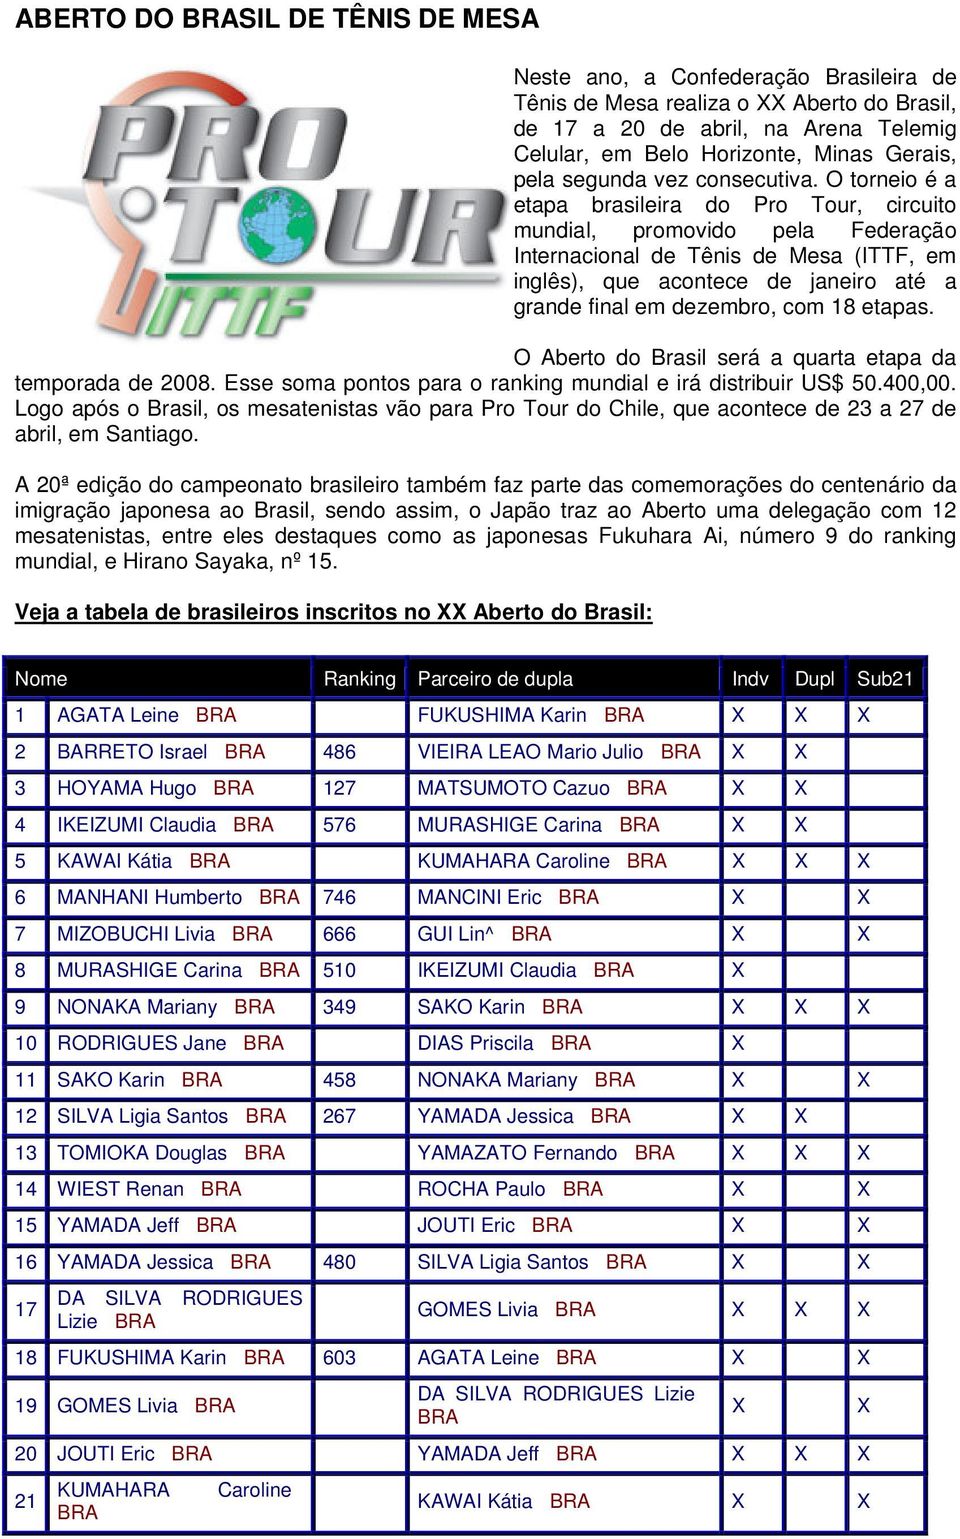 O torneio é a etapa brasileira do Pro Tour, circuito mundial, promovido pela Federação Internacional de Tênis de Mesa (ITTF, em inglês), que acontece de janeiro até a grande final em dezembro, com 18